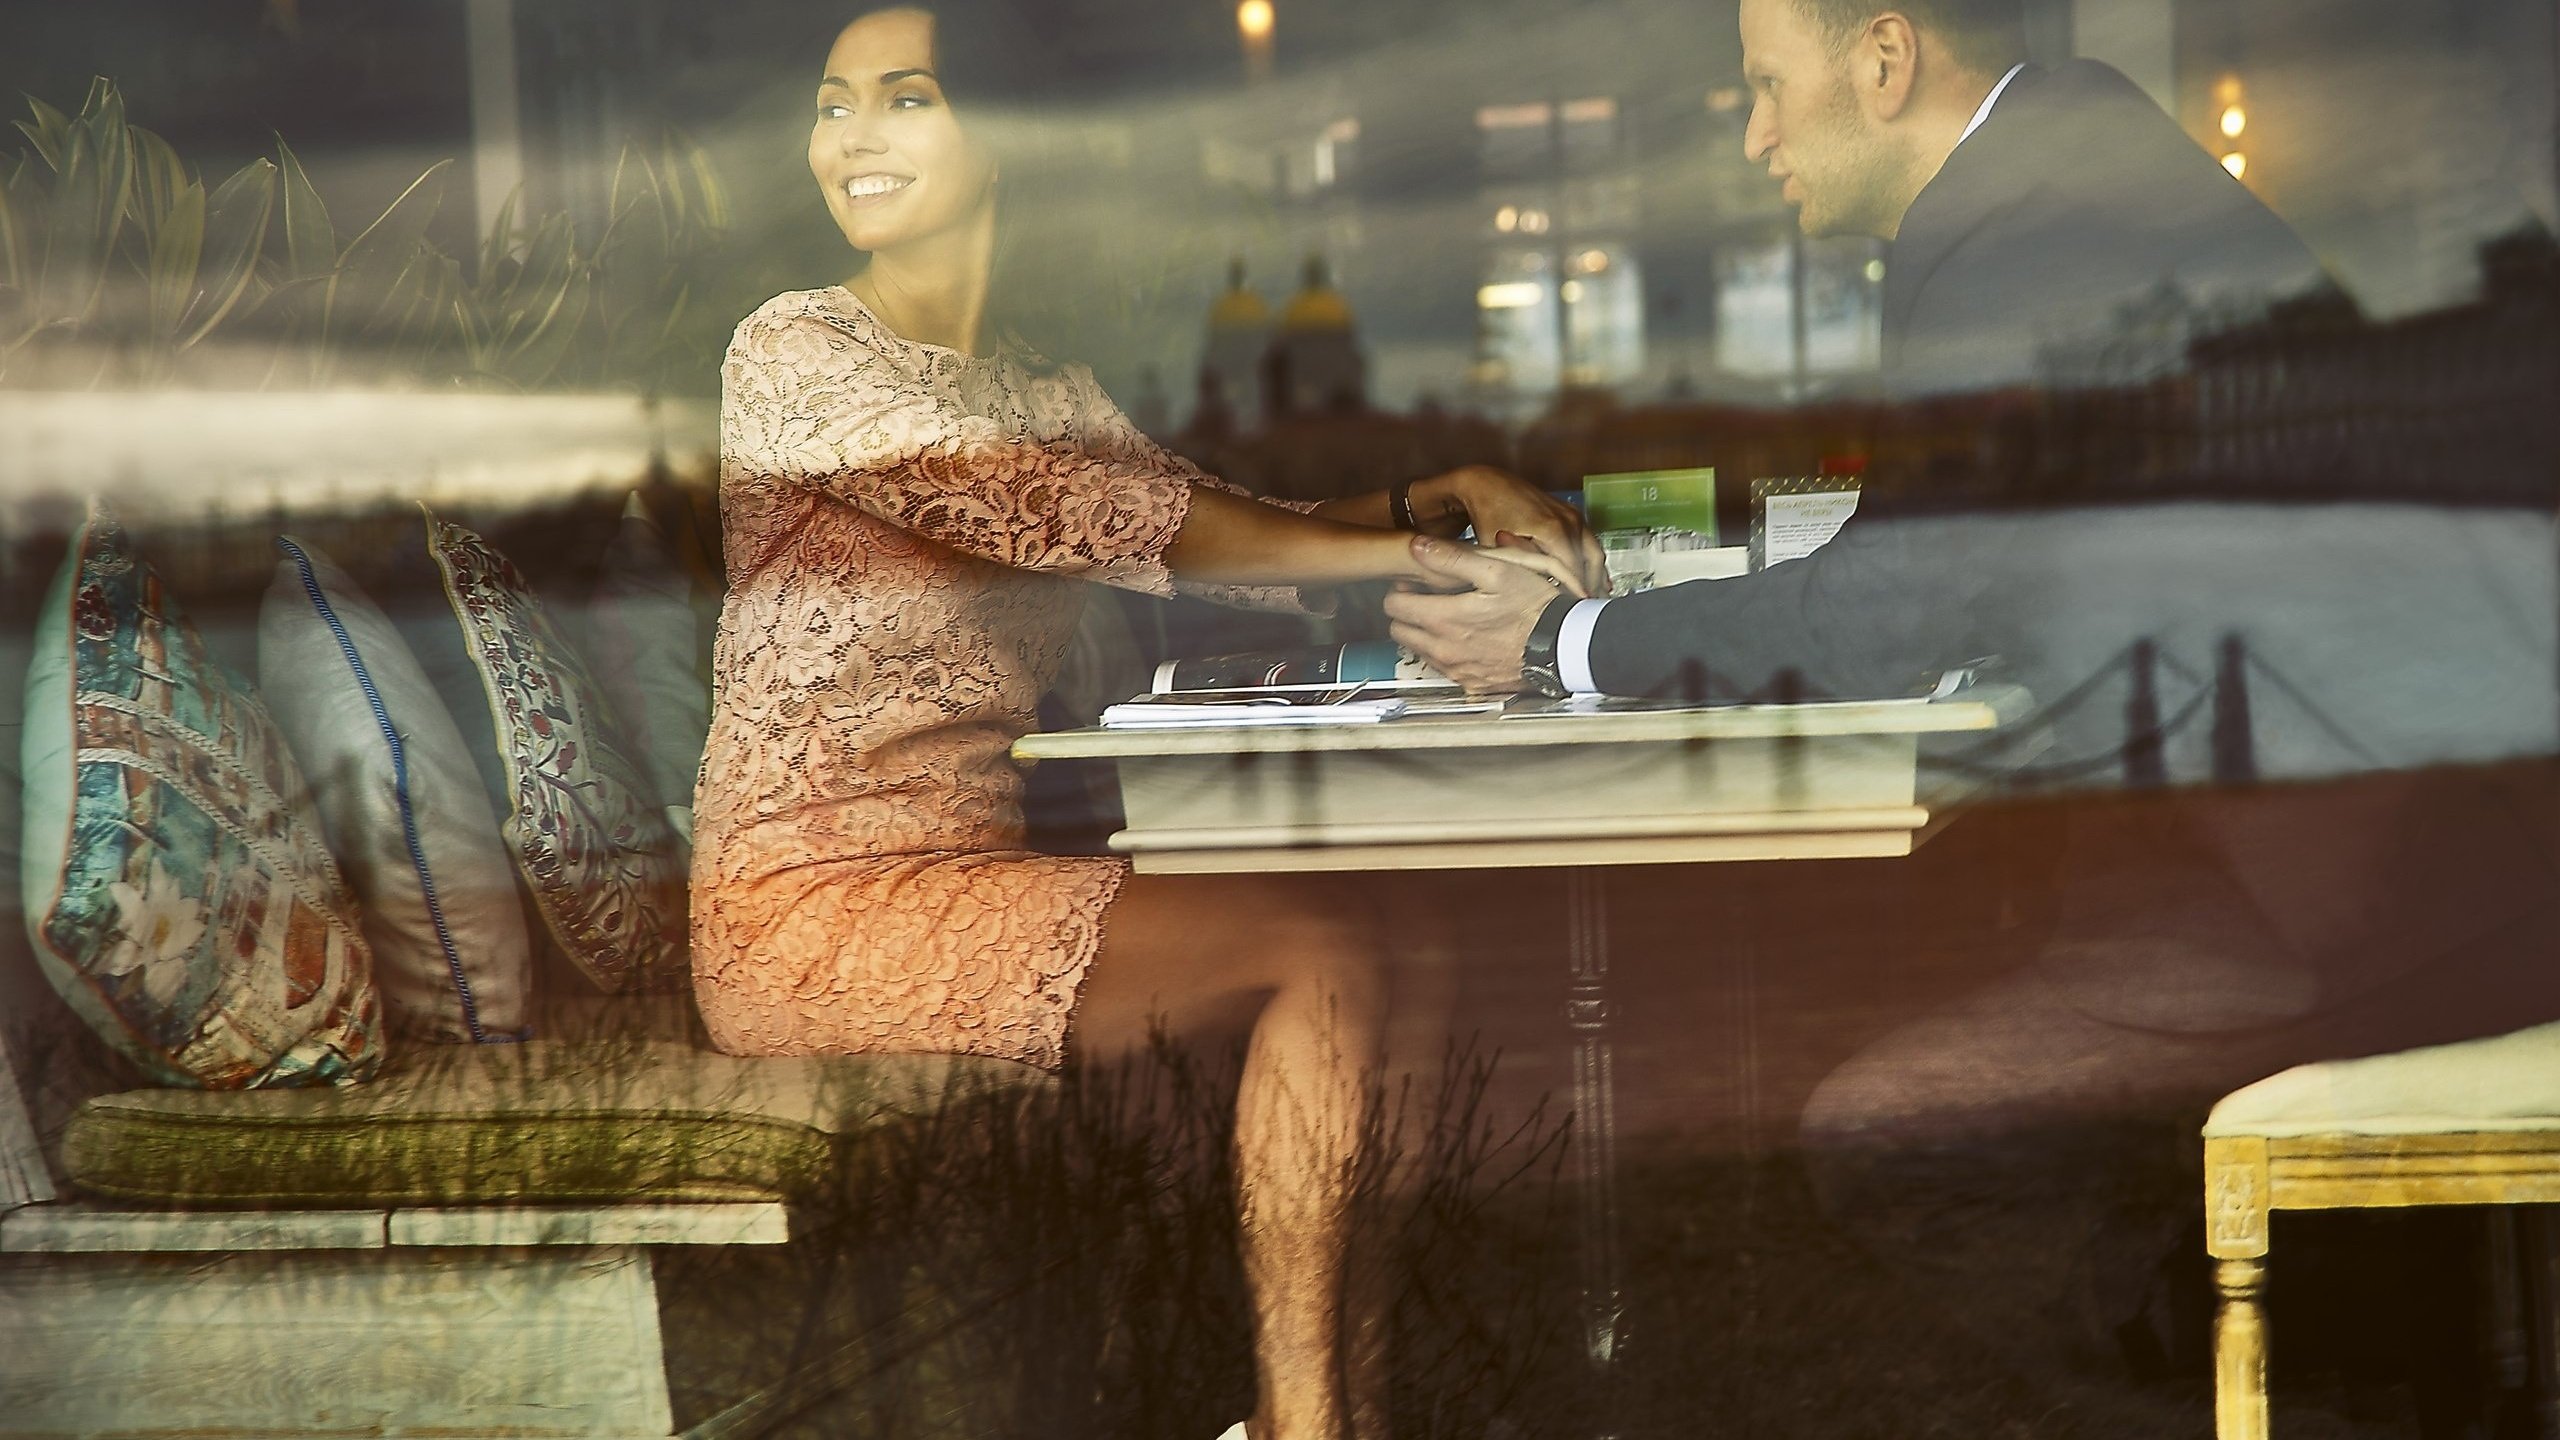 Муж ждет жену за дверью. Девушка в кафе у окна. Девушка ждет. Мужчина и женщина за столиком. Девушка сидит в кафе.